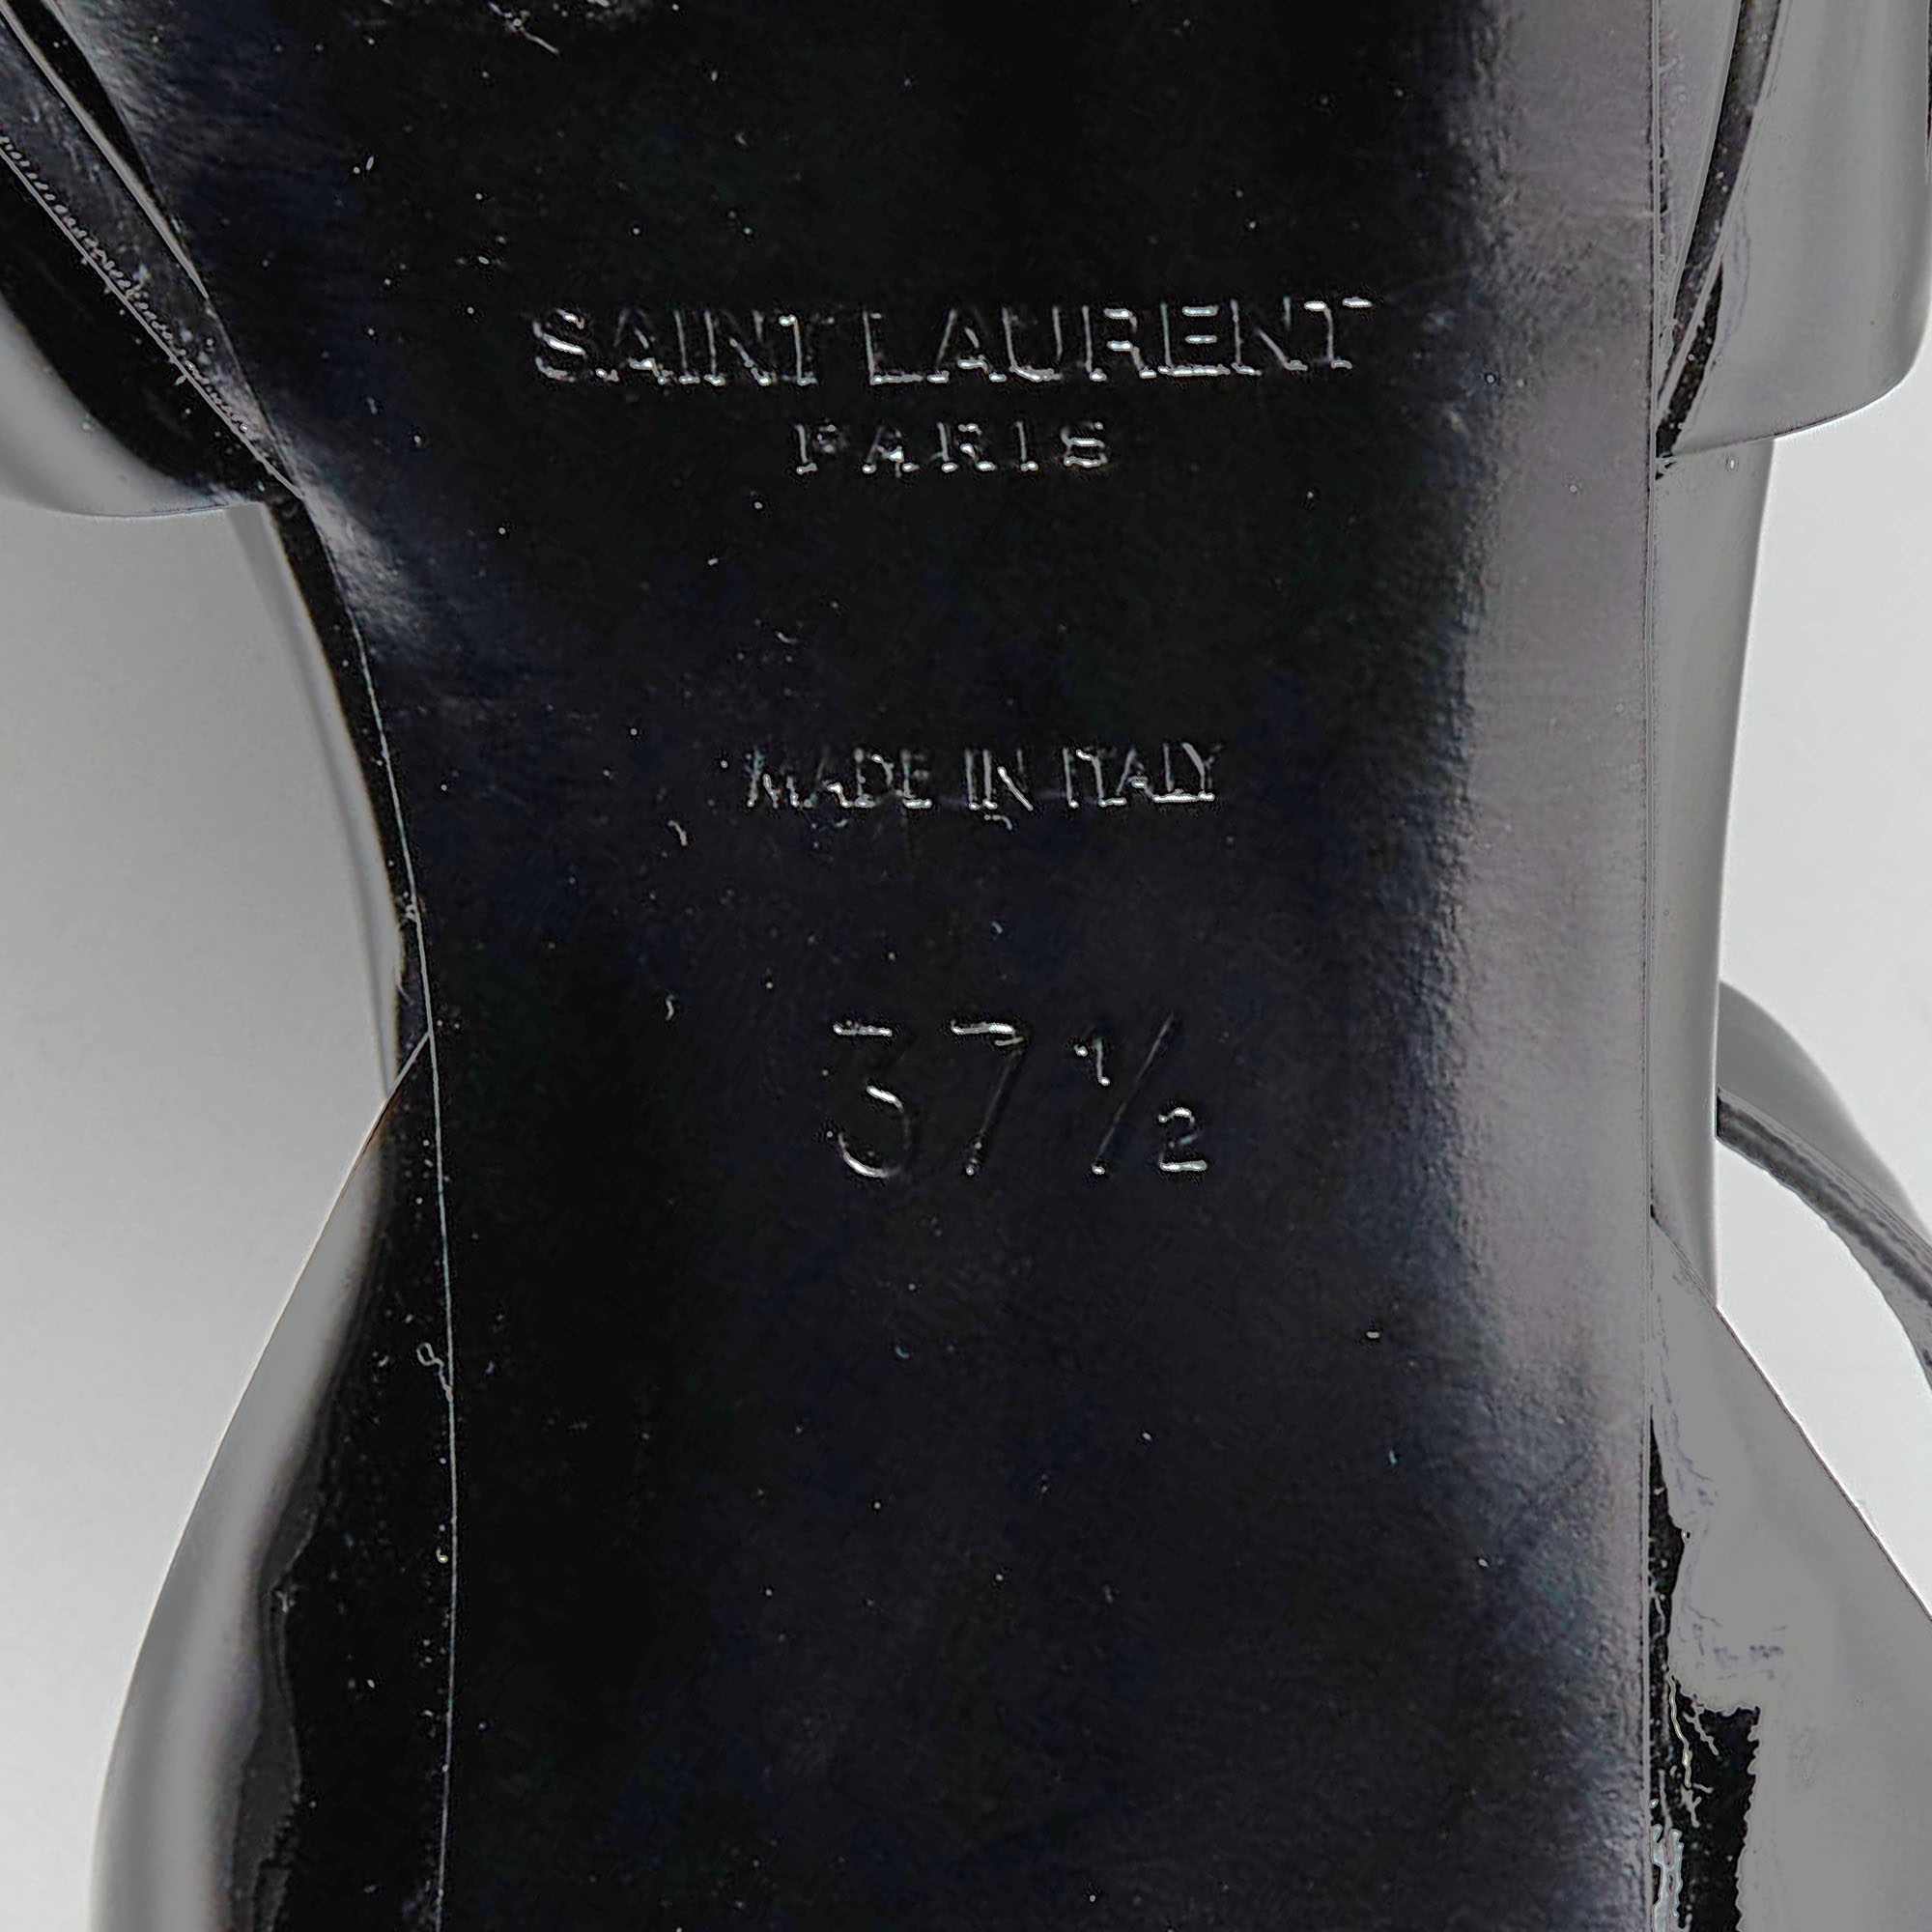 Saint Laurent Black Patent Leather Tribute Ankle Strap Sandals Size 37.5